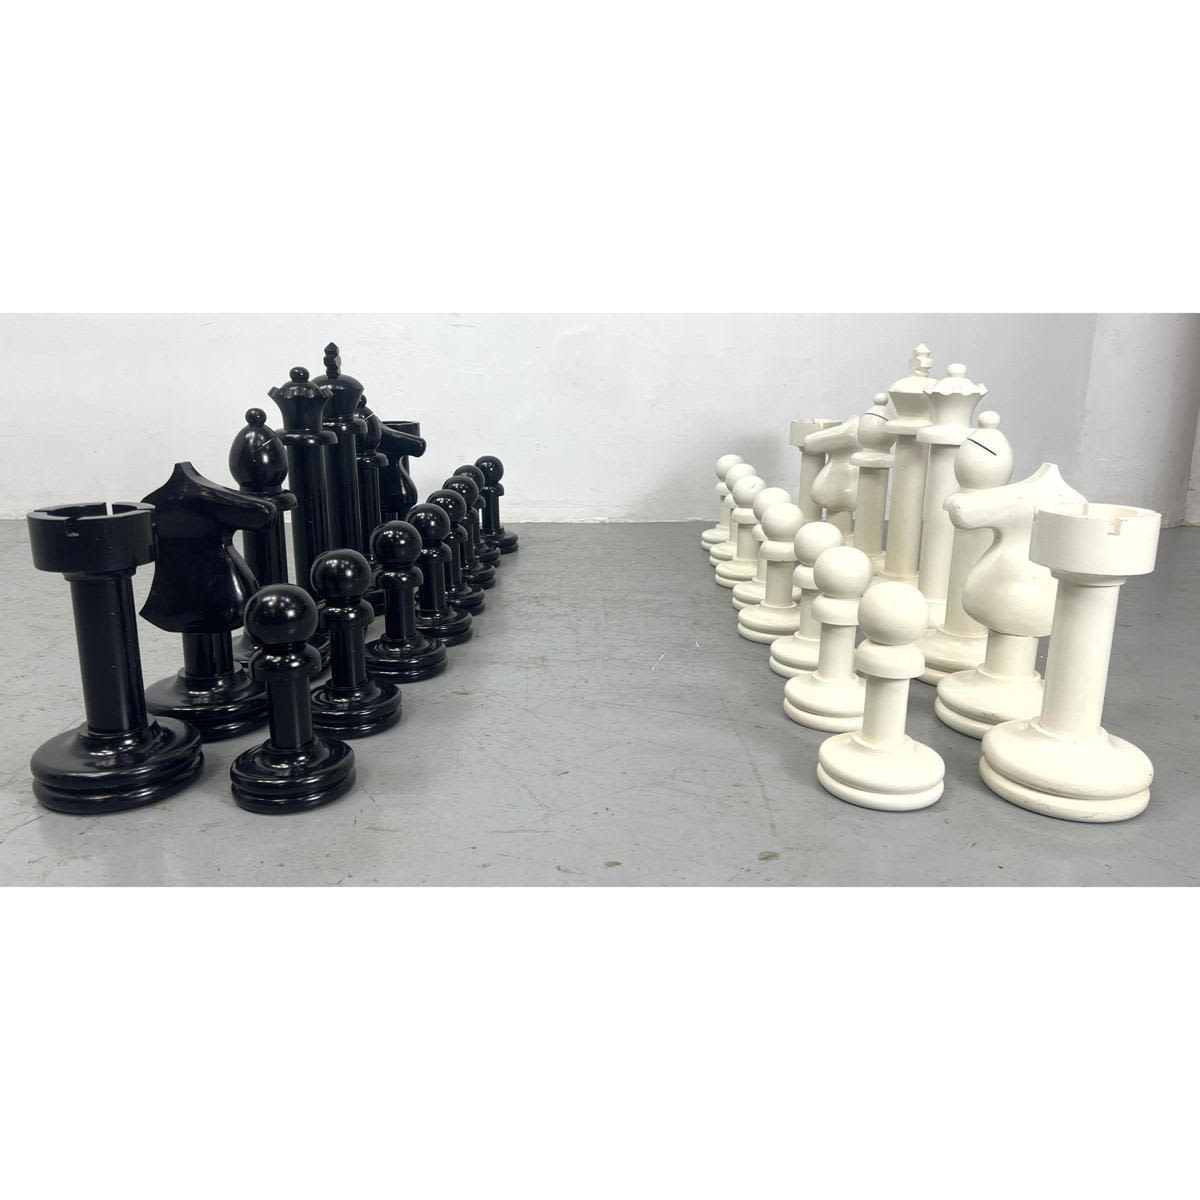 Large Lawn Size Chess Set. Black